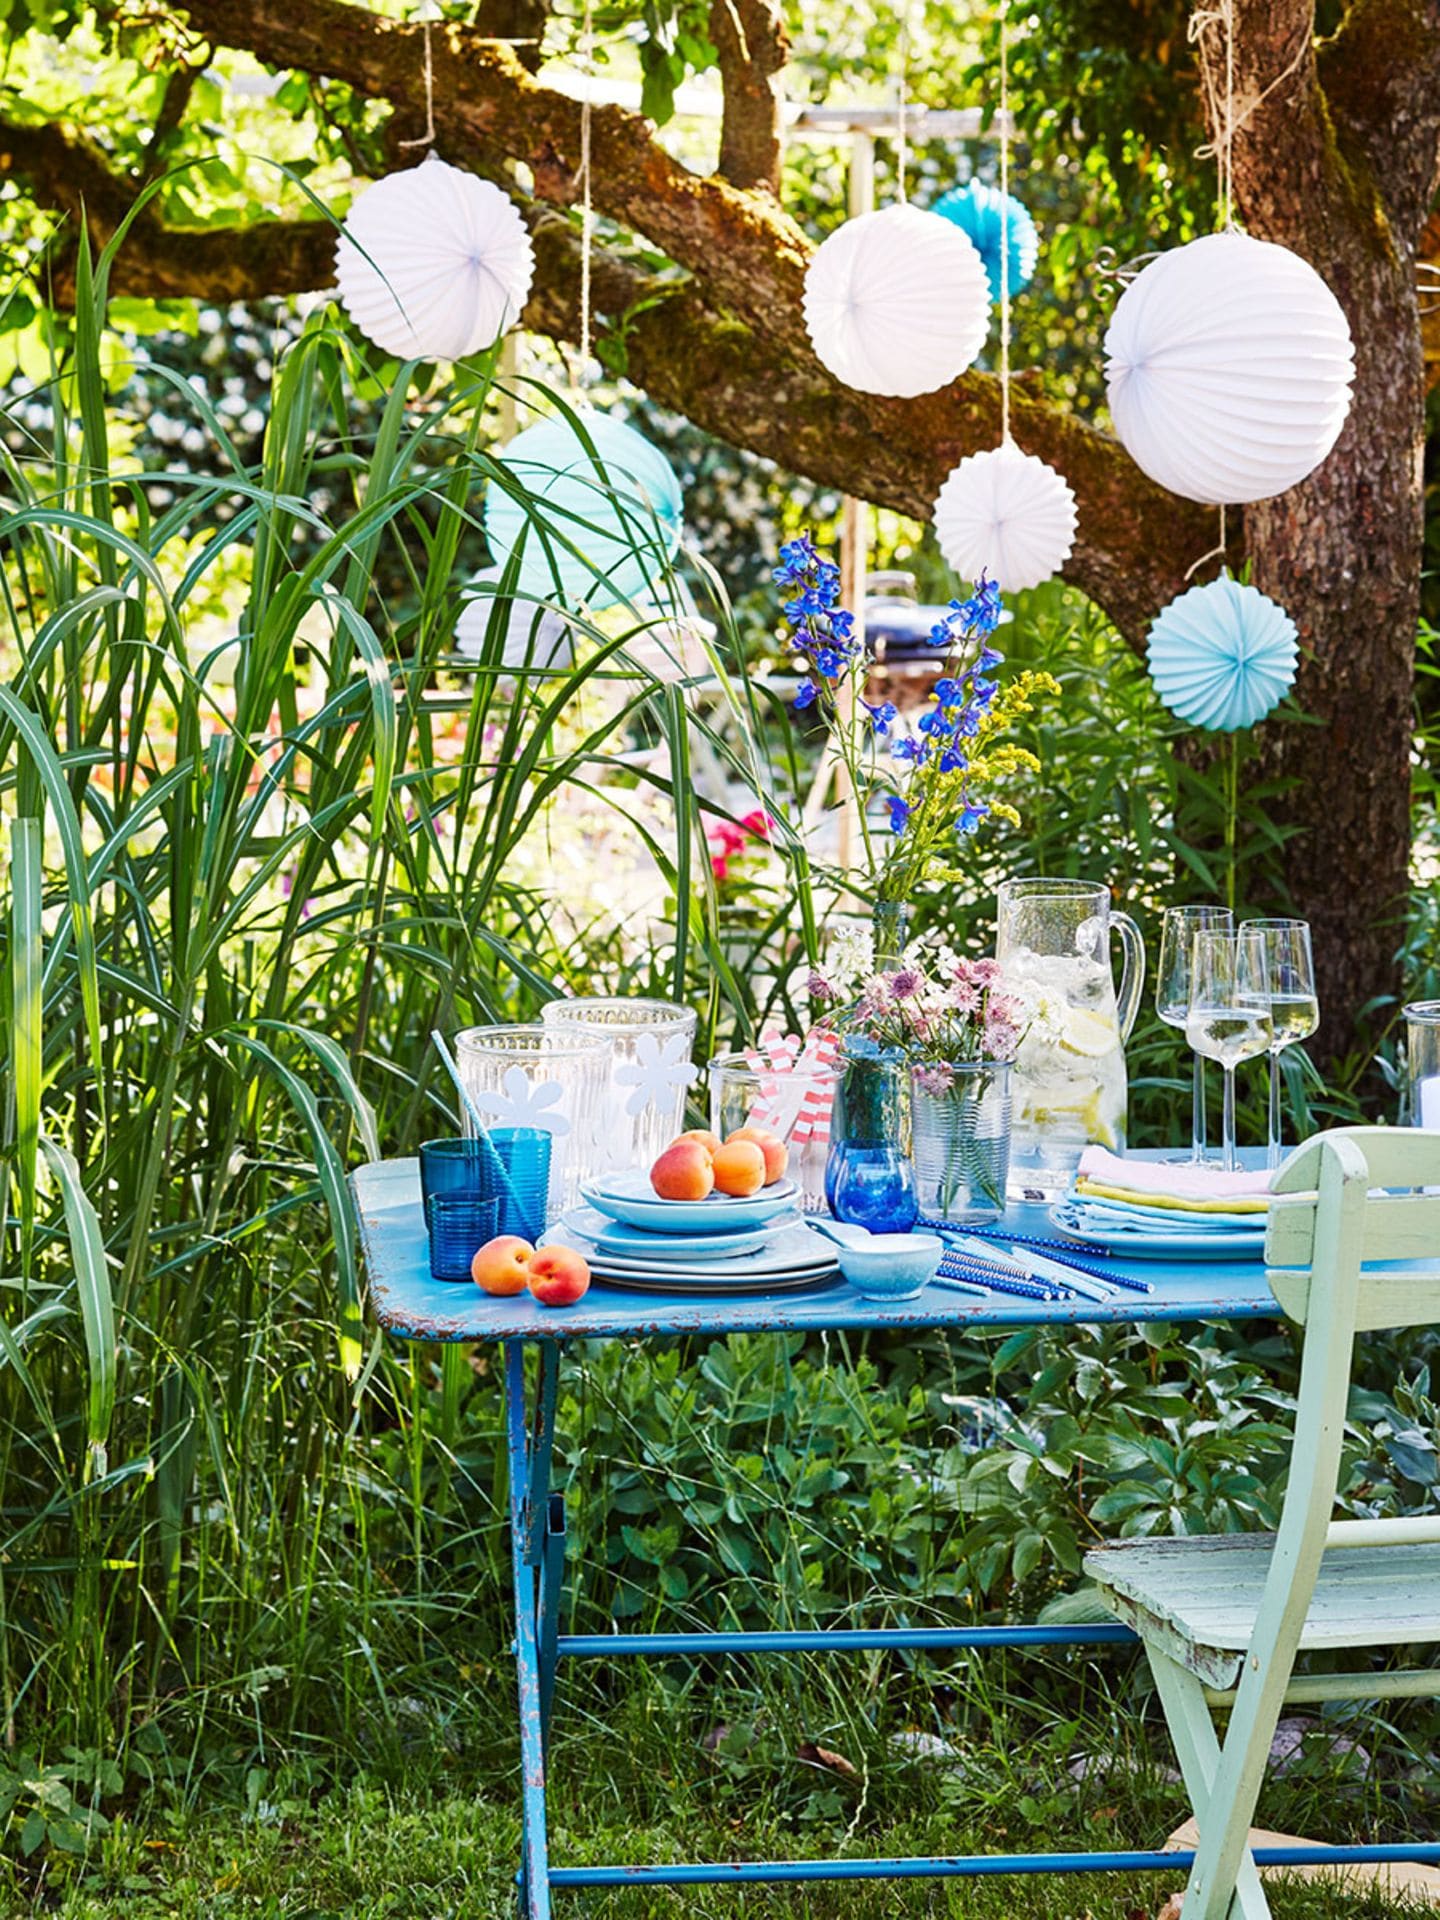 Gartentisch mit Utensilien für die Sommerparty